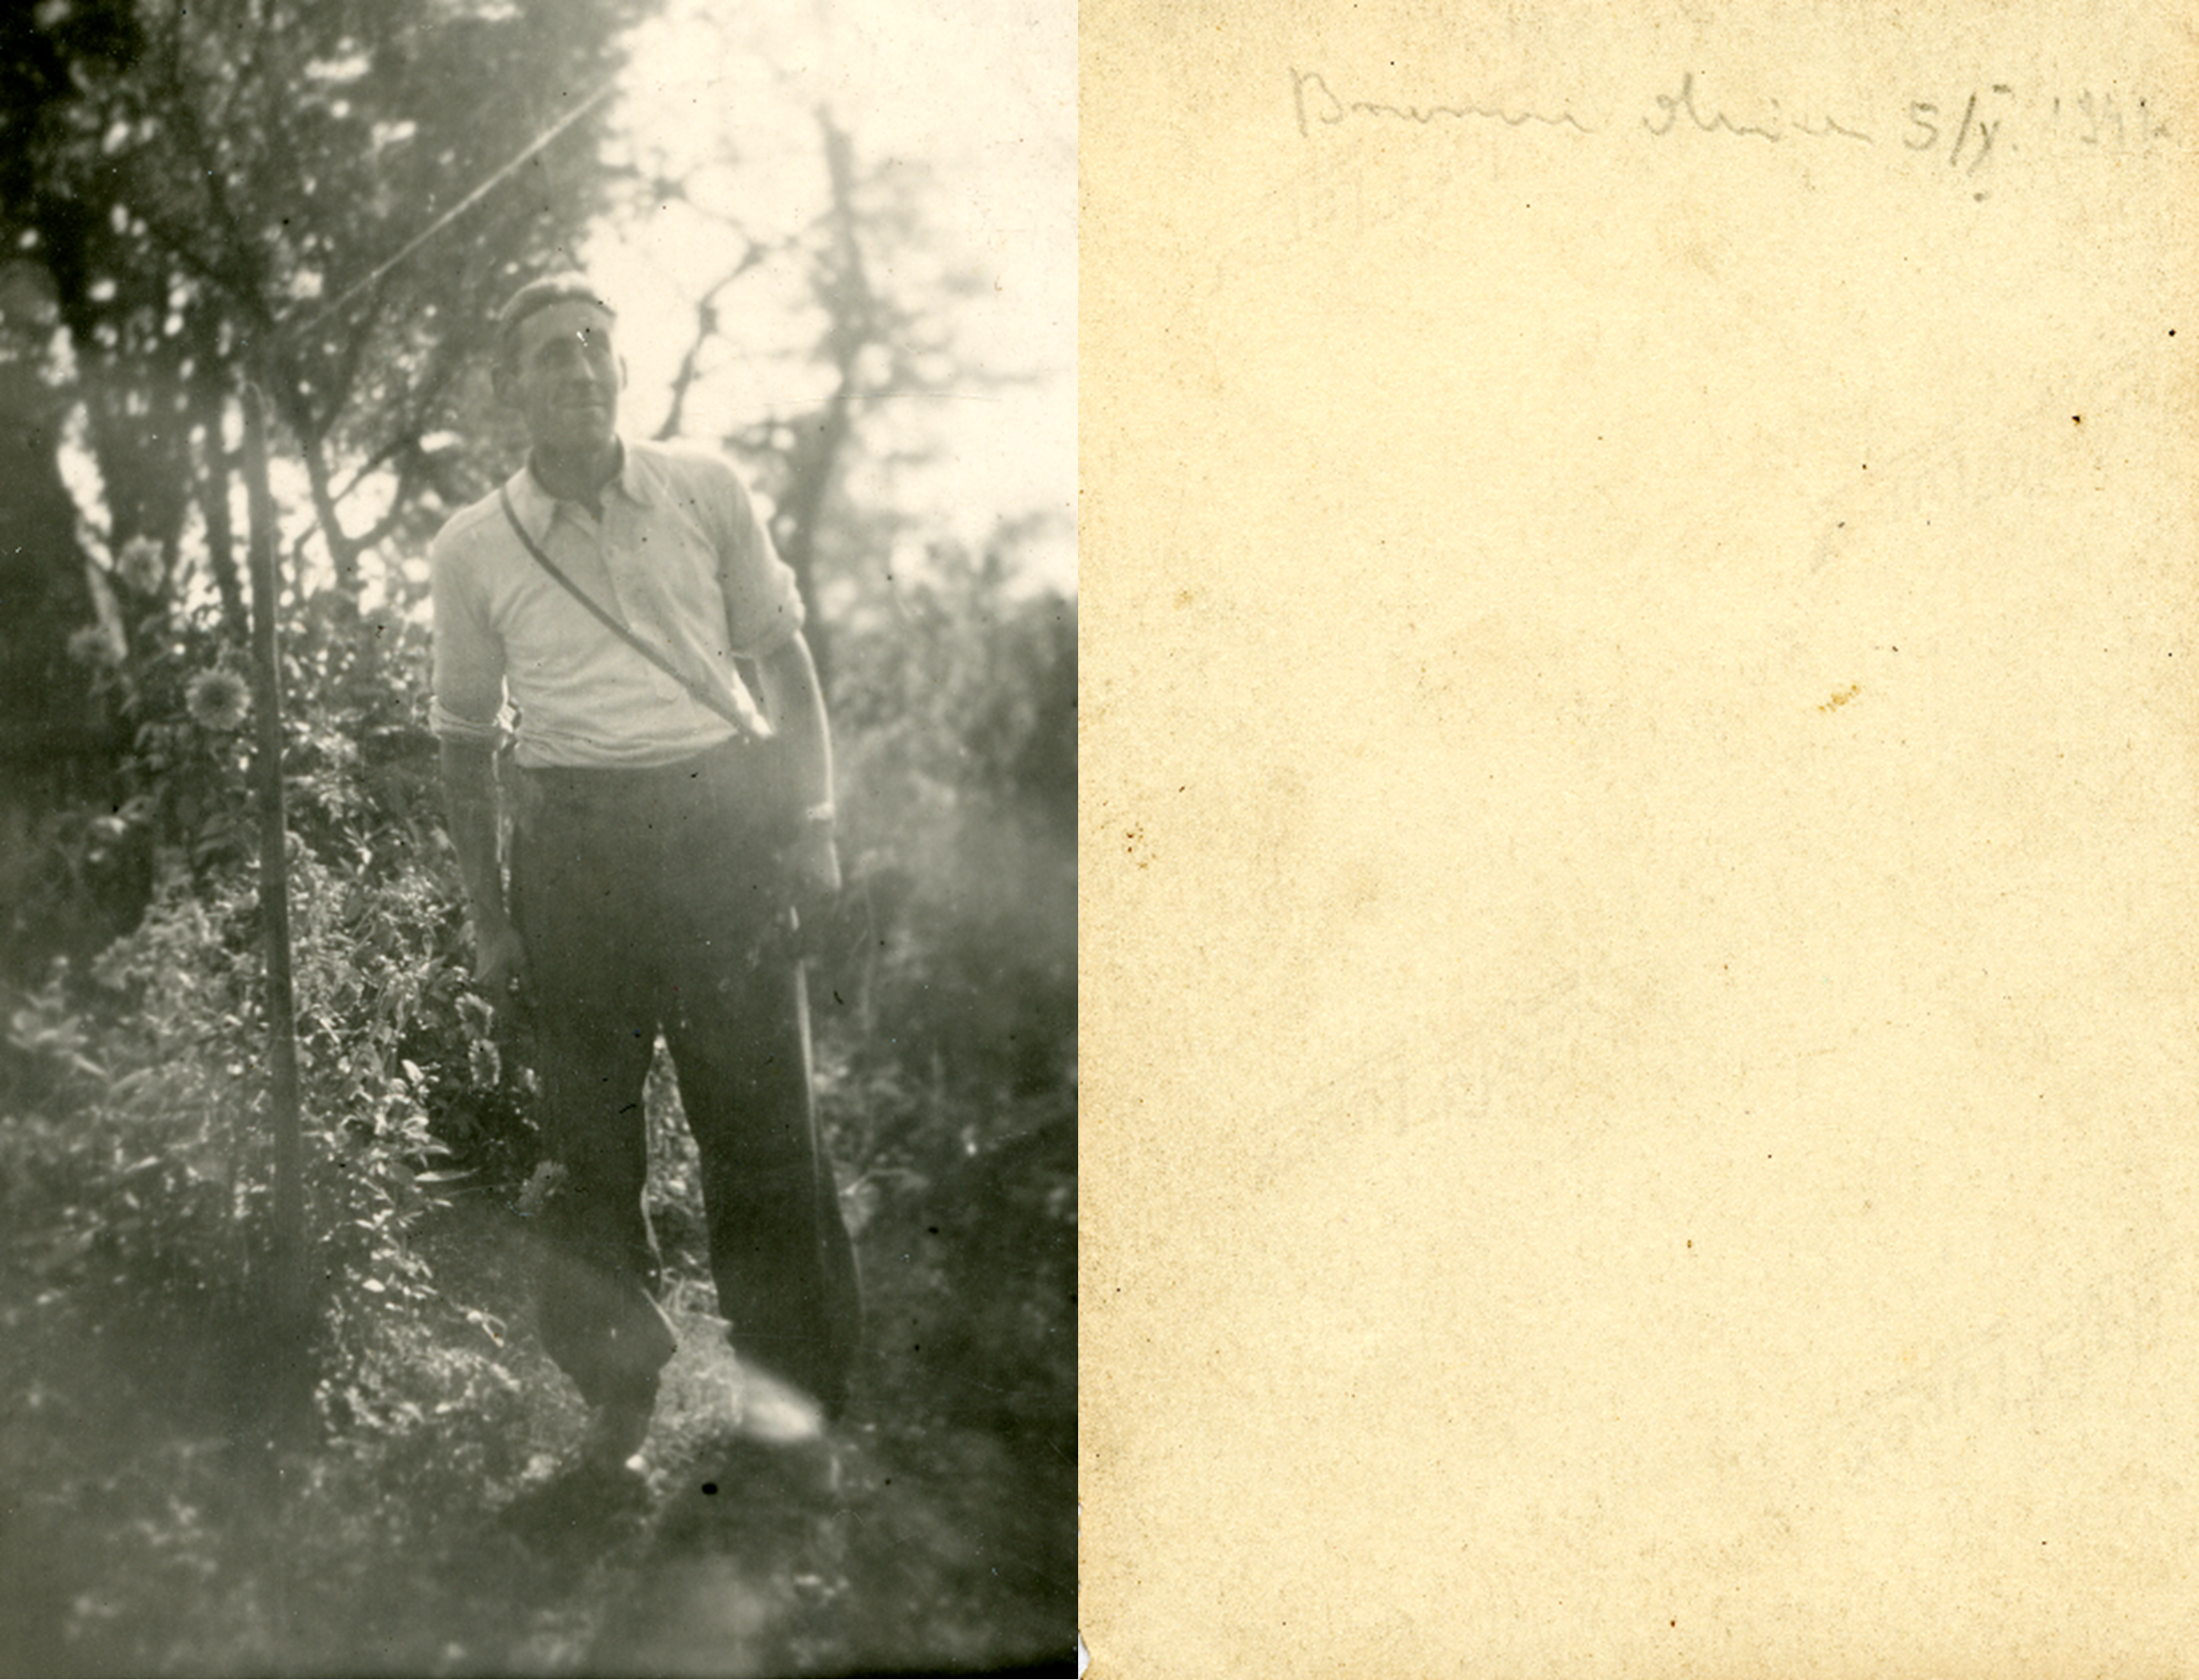 Pan Stanisław Stawowy z aparatem fotograficznym w ogrodzie. Brzeszcze, 1941 rok